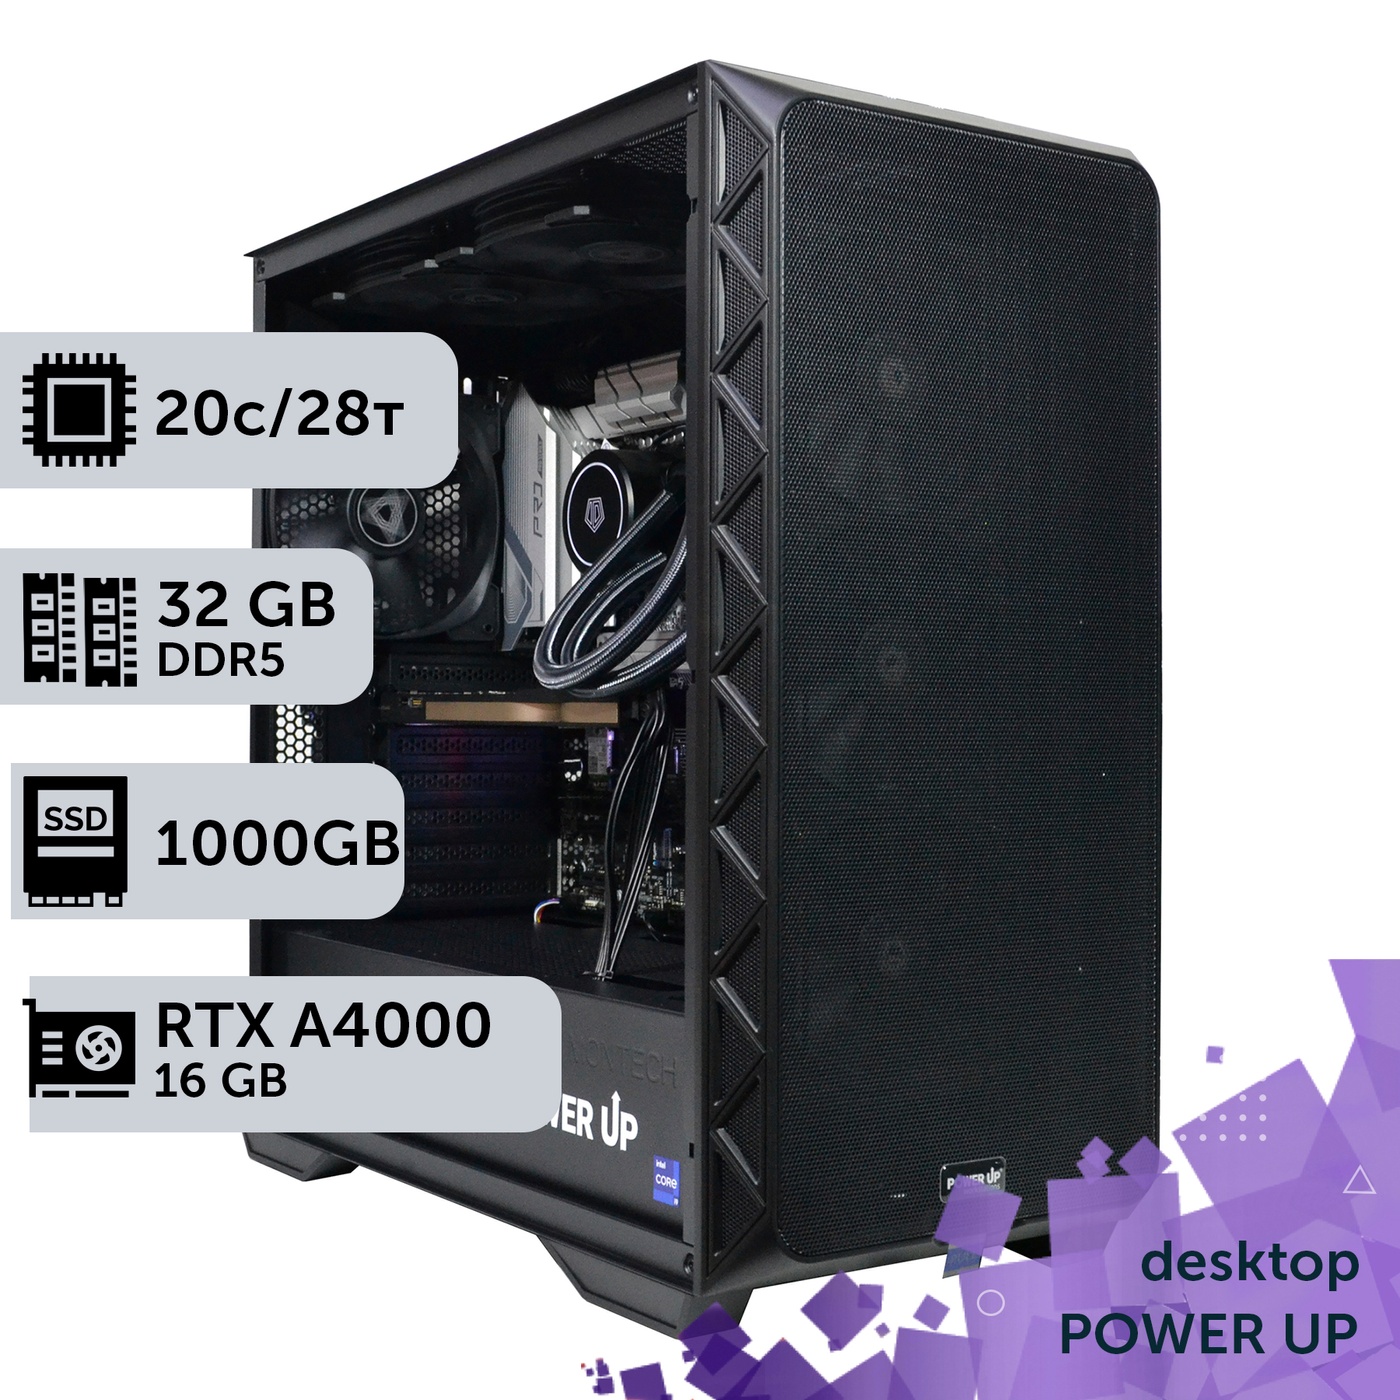 Рабочая станция PowerUp Desktop #346 Core i7 14700K/32 GB/SSD 1TB/NVIDIA Quadro RTX A4000 16GB